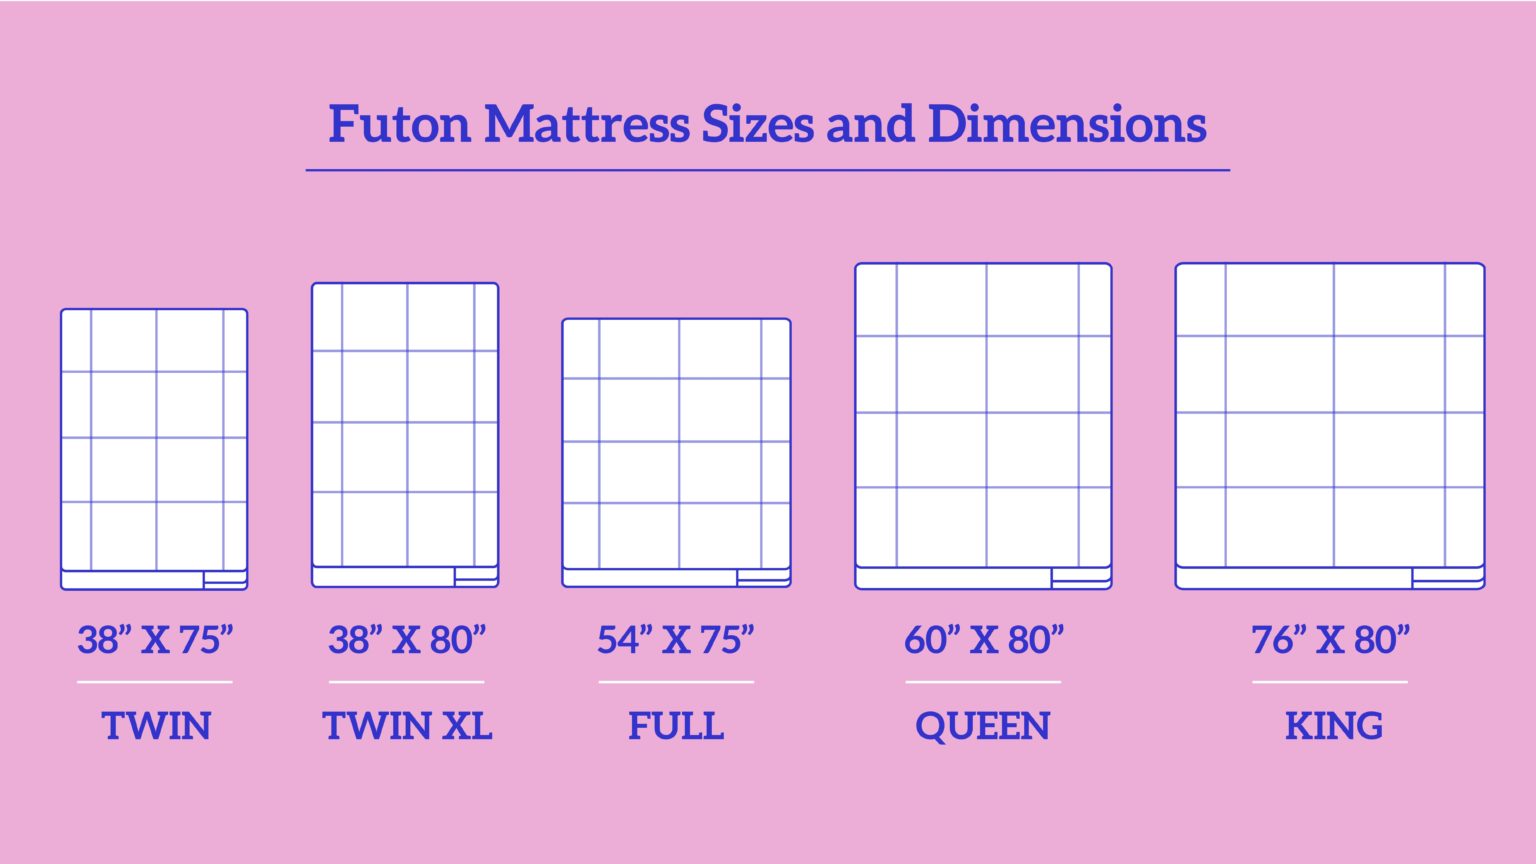 dimensions of a full futon mattress